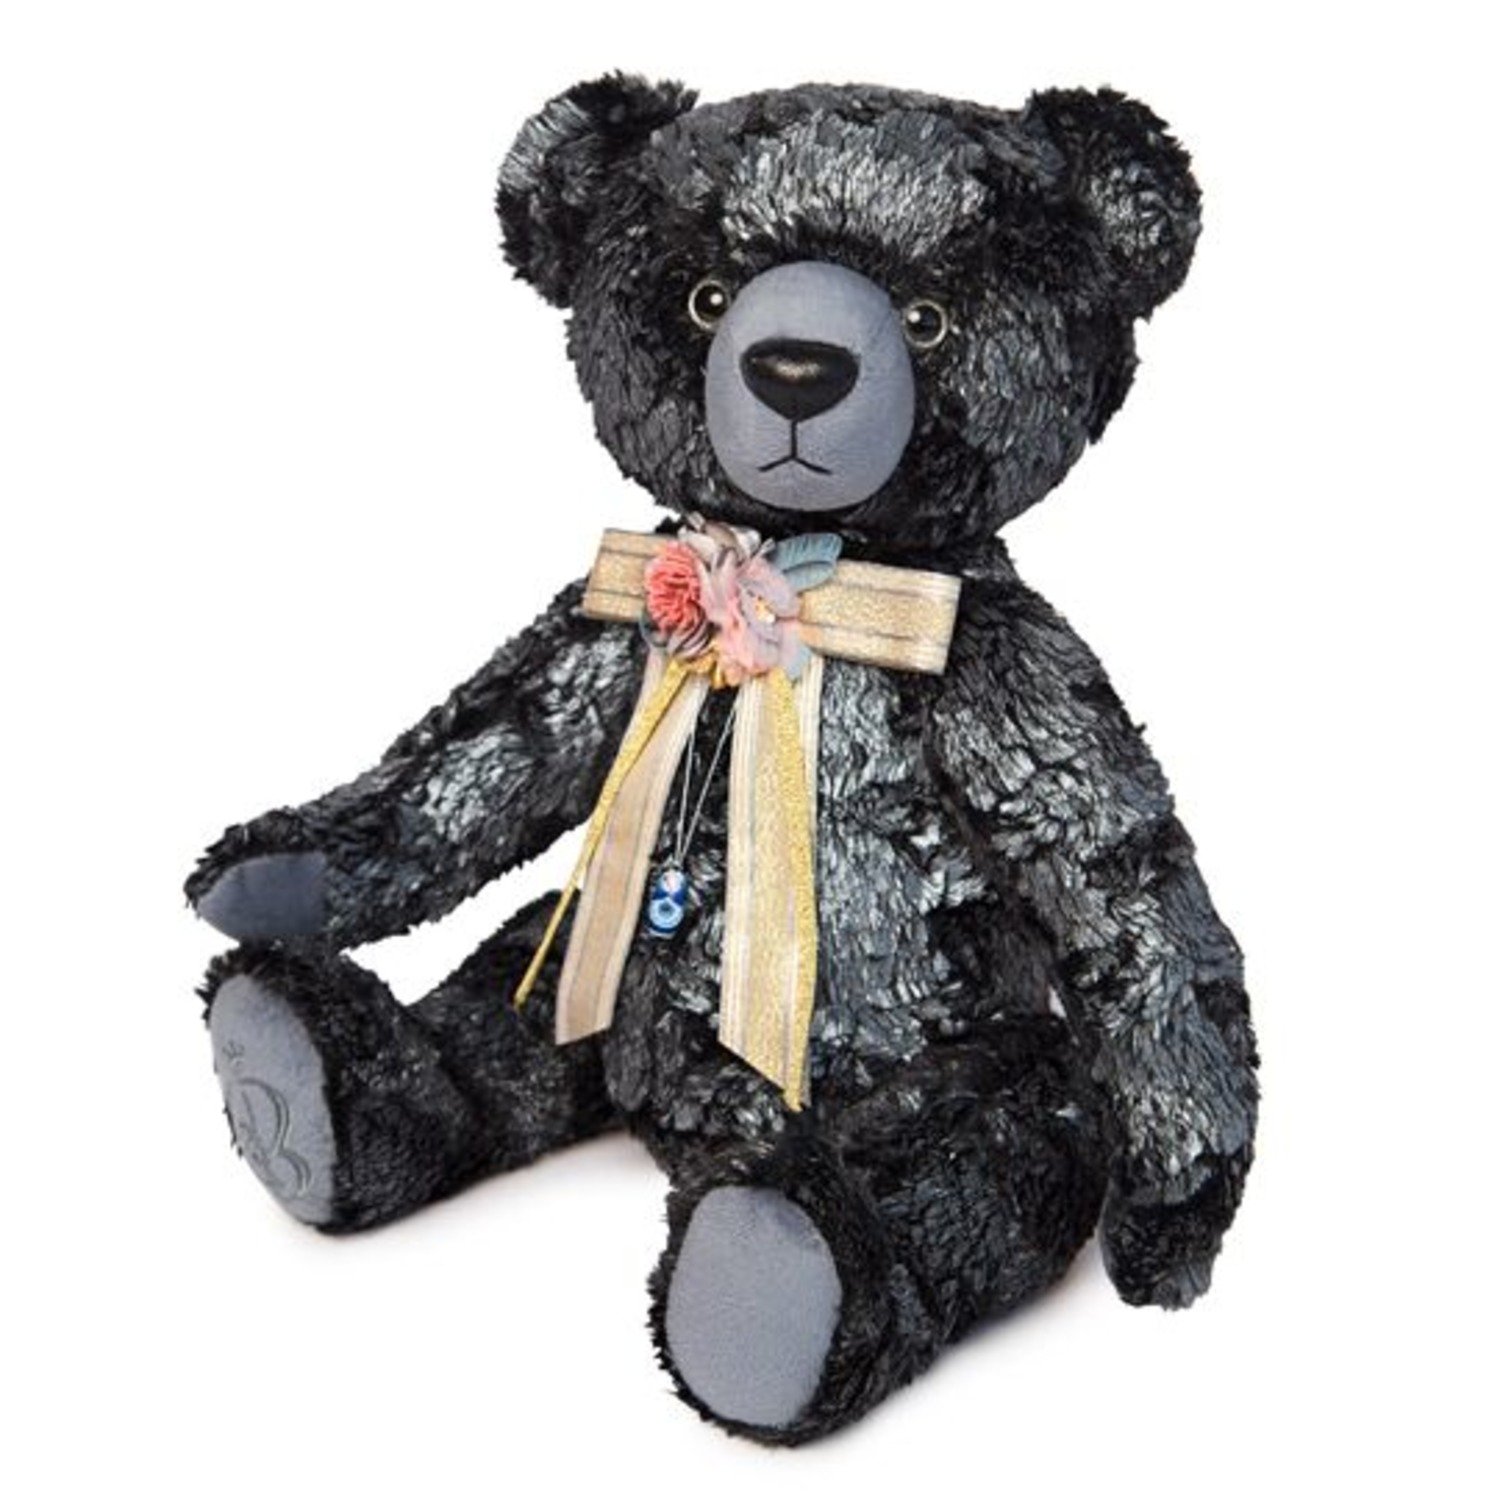 Медведь басс. Буди баса медведь Бернард. Мягкая игрушка медведь БЕРНАРТ. Медведь Бернард игрушка Budi basa. Мягкая игрушка Bernart медведь сапфировый 30 см.